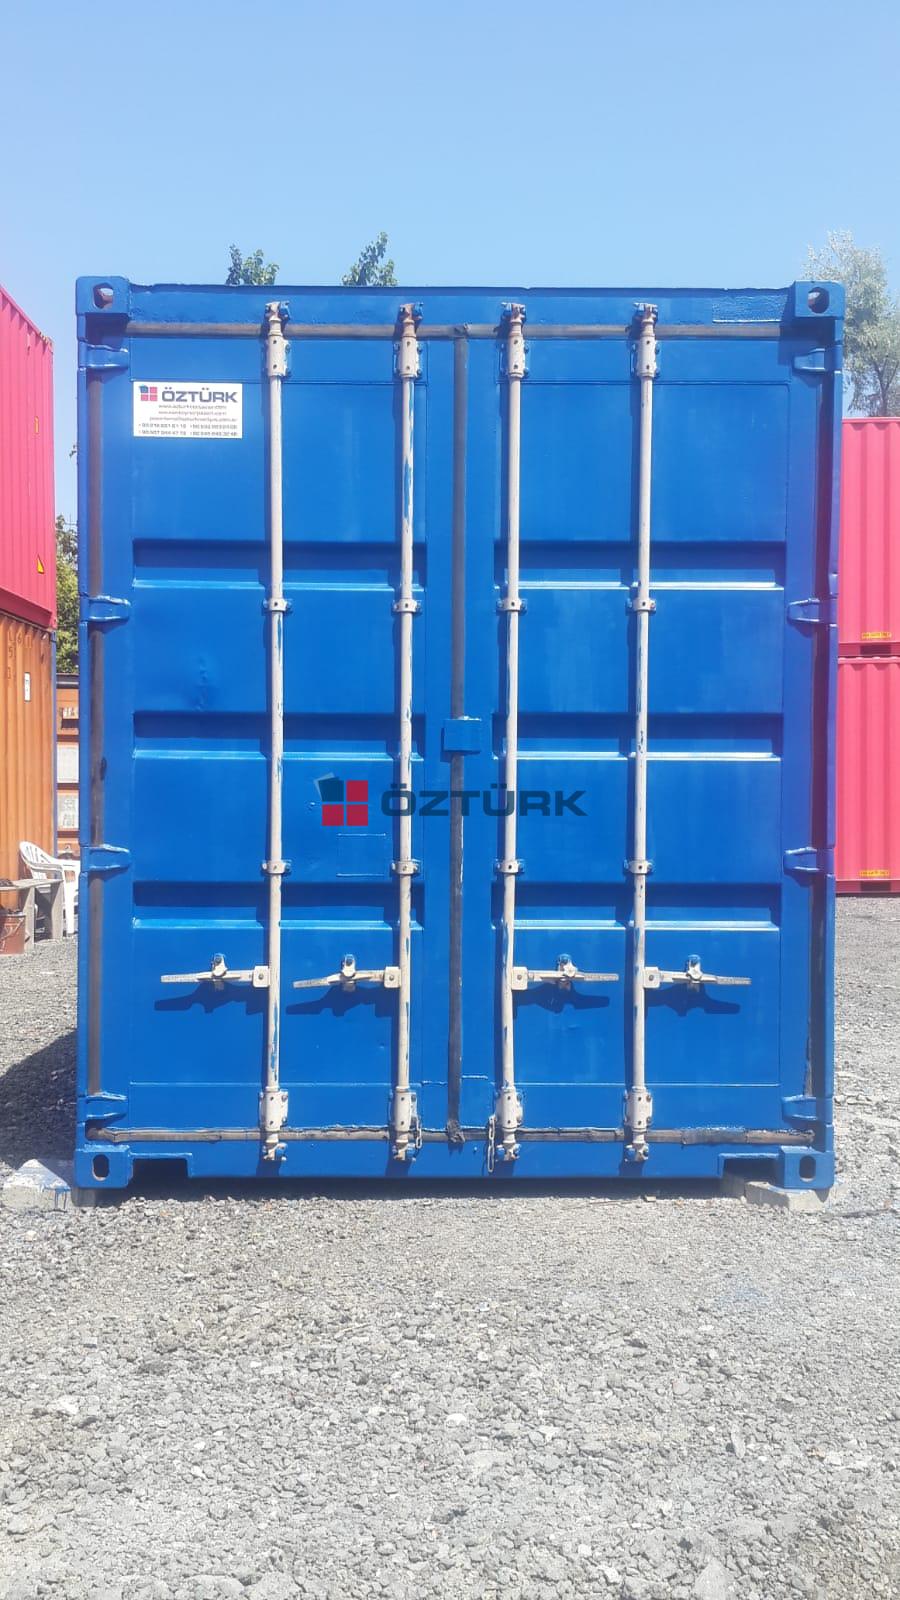 Ýstanbul satýlýk 40 HC yük konteyner depolama fabrika þantiye